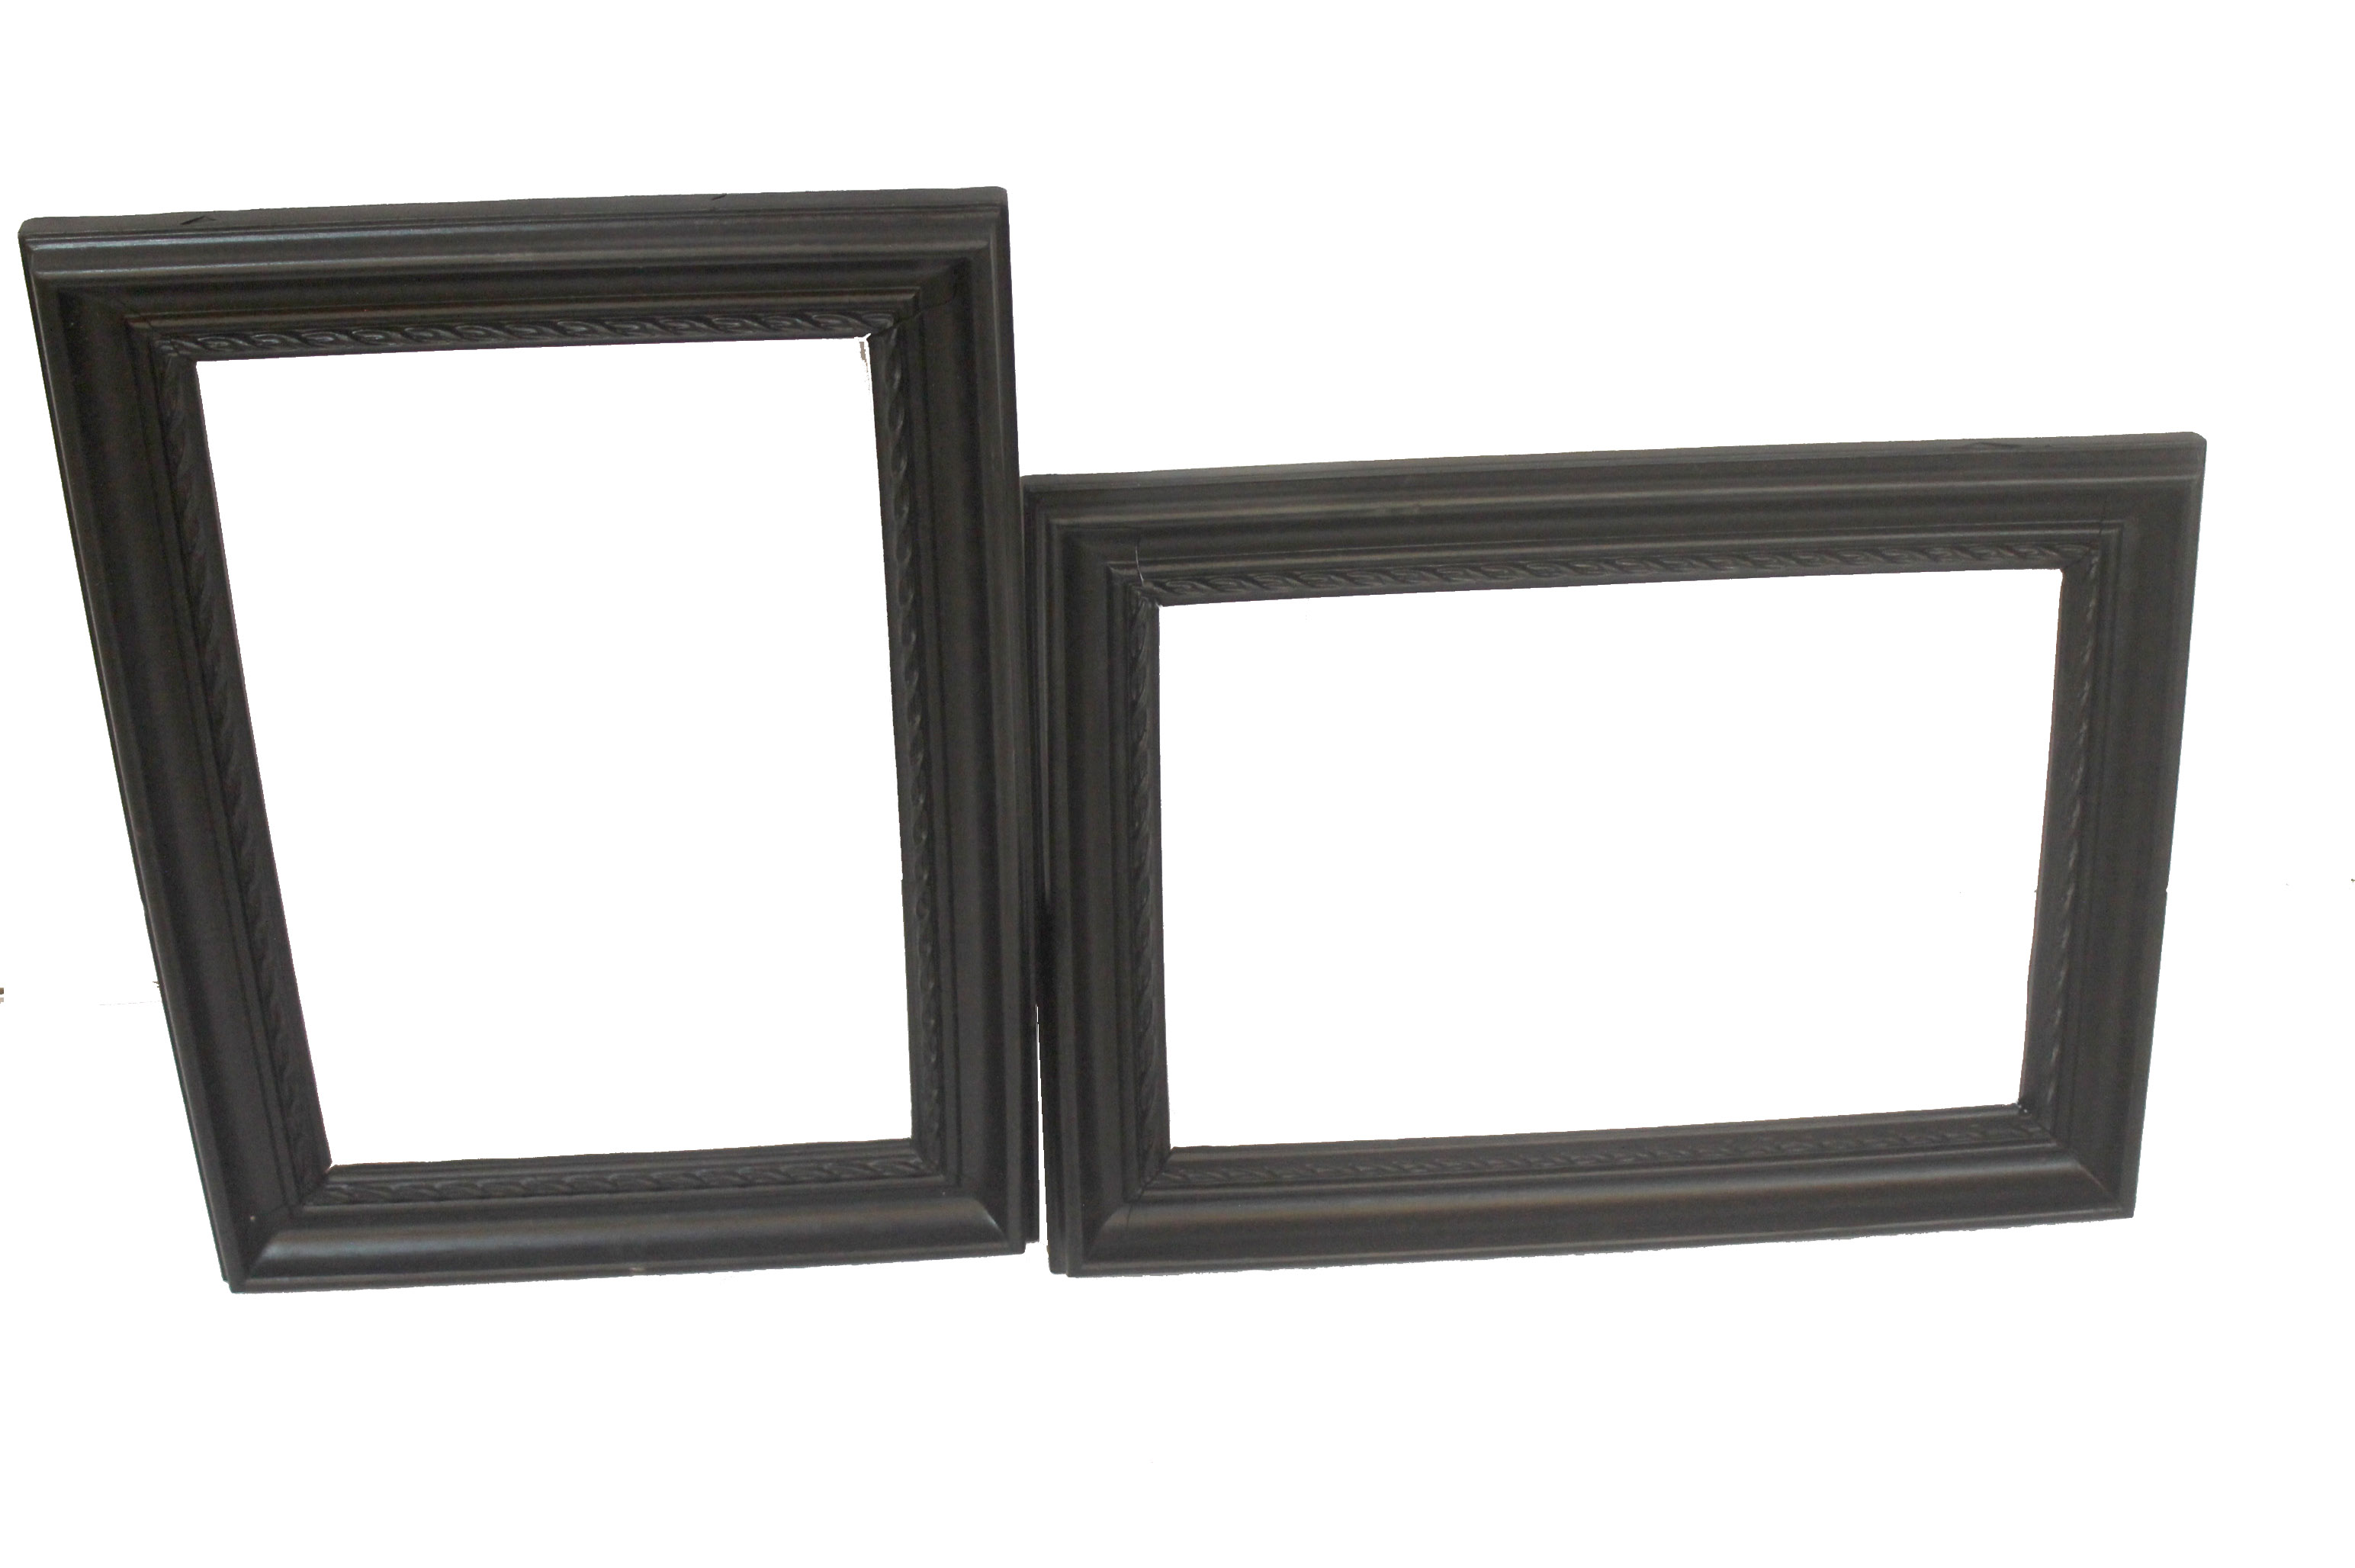 madera marco del espejo talla, espejo antiguo de la hoja de la pared marco de oro, marco de espejo redondo